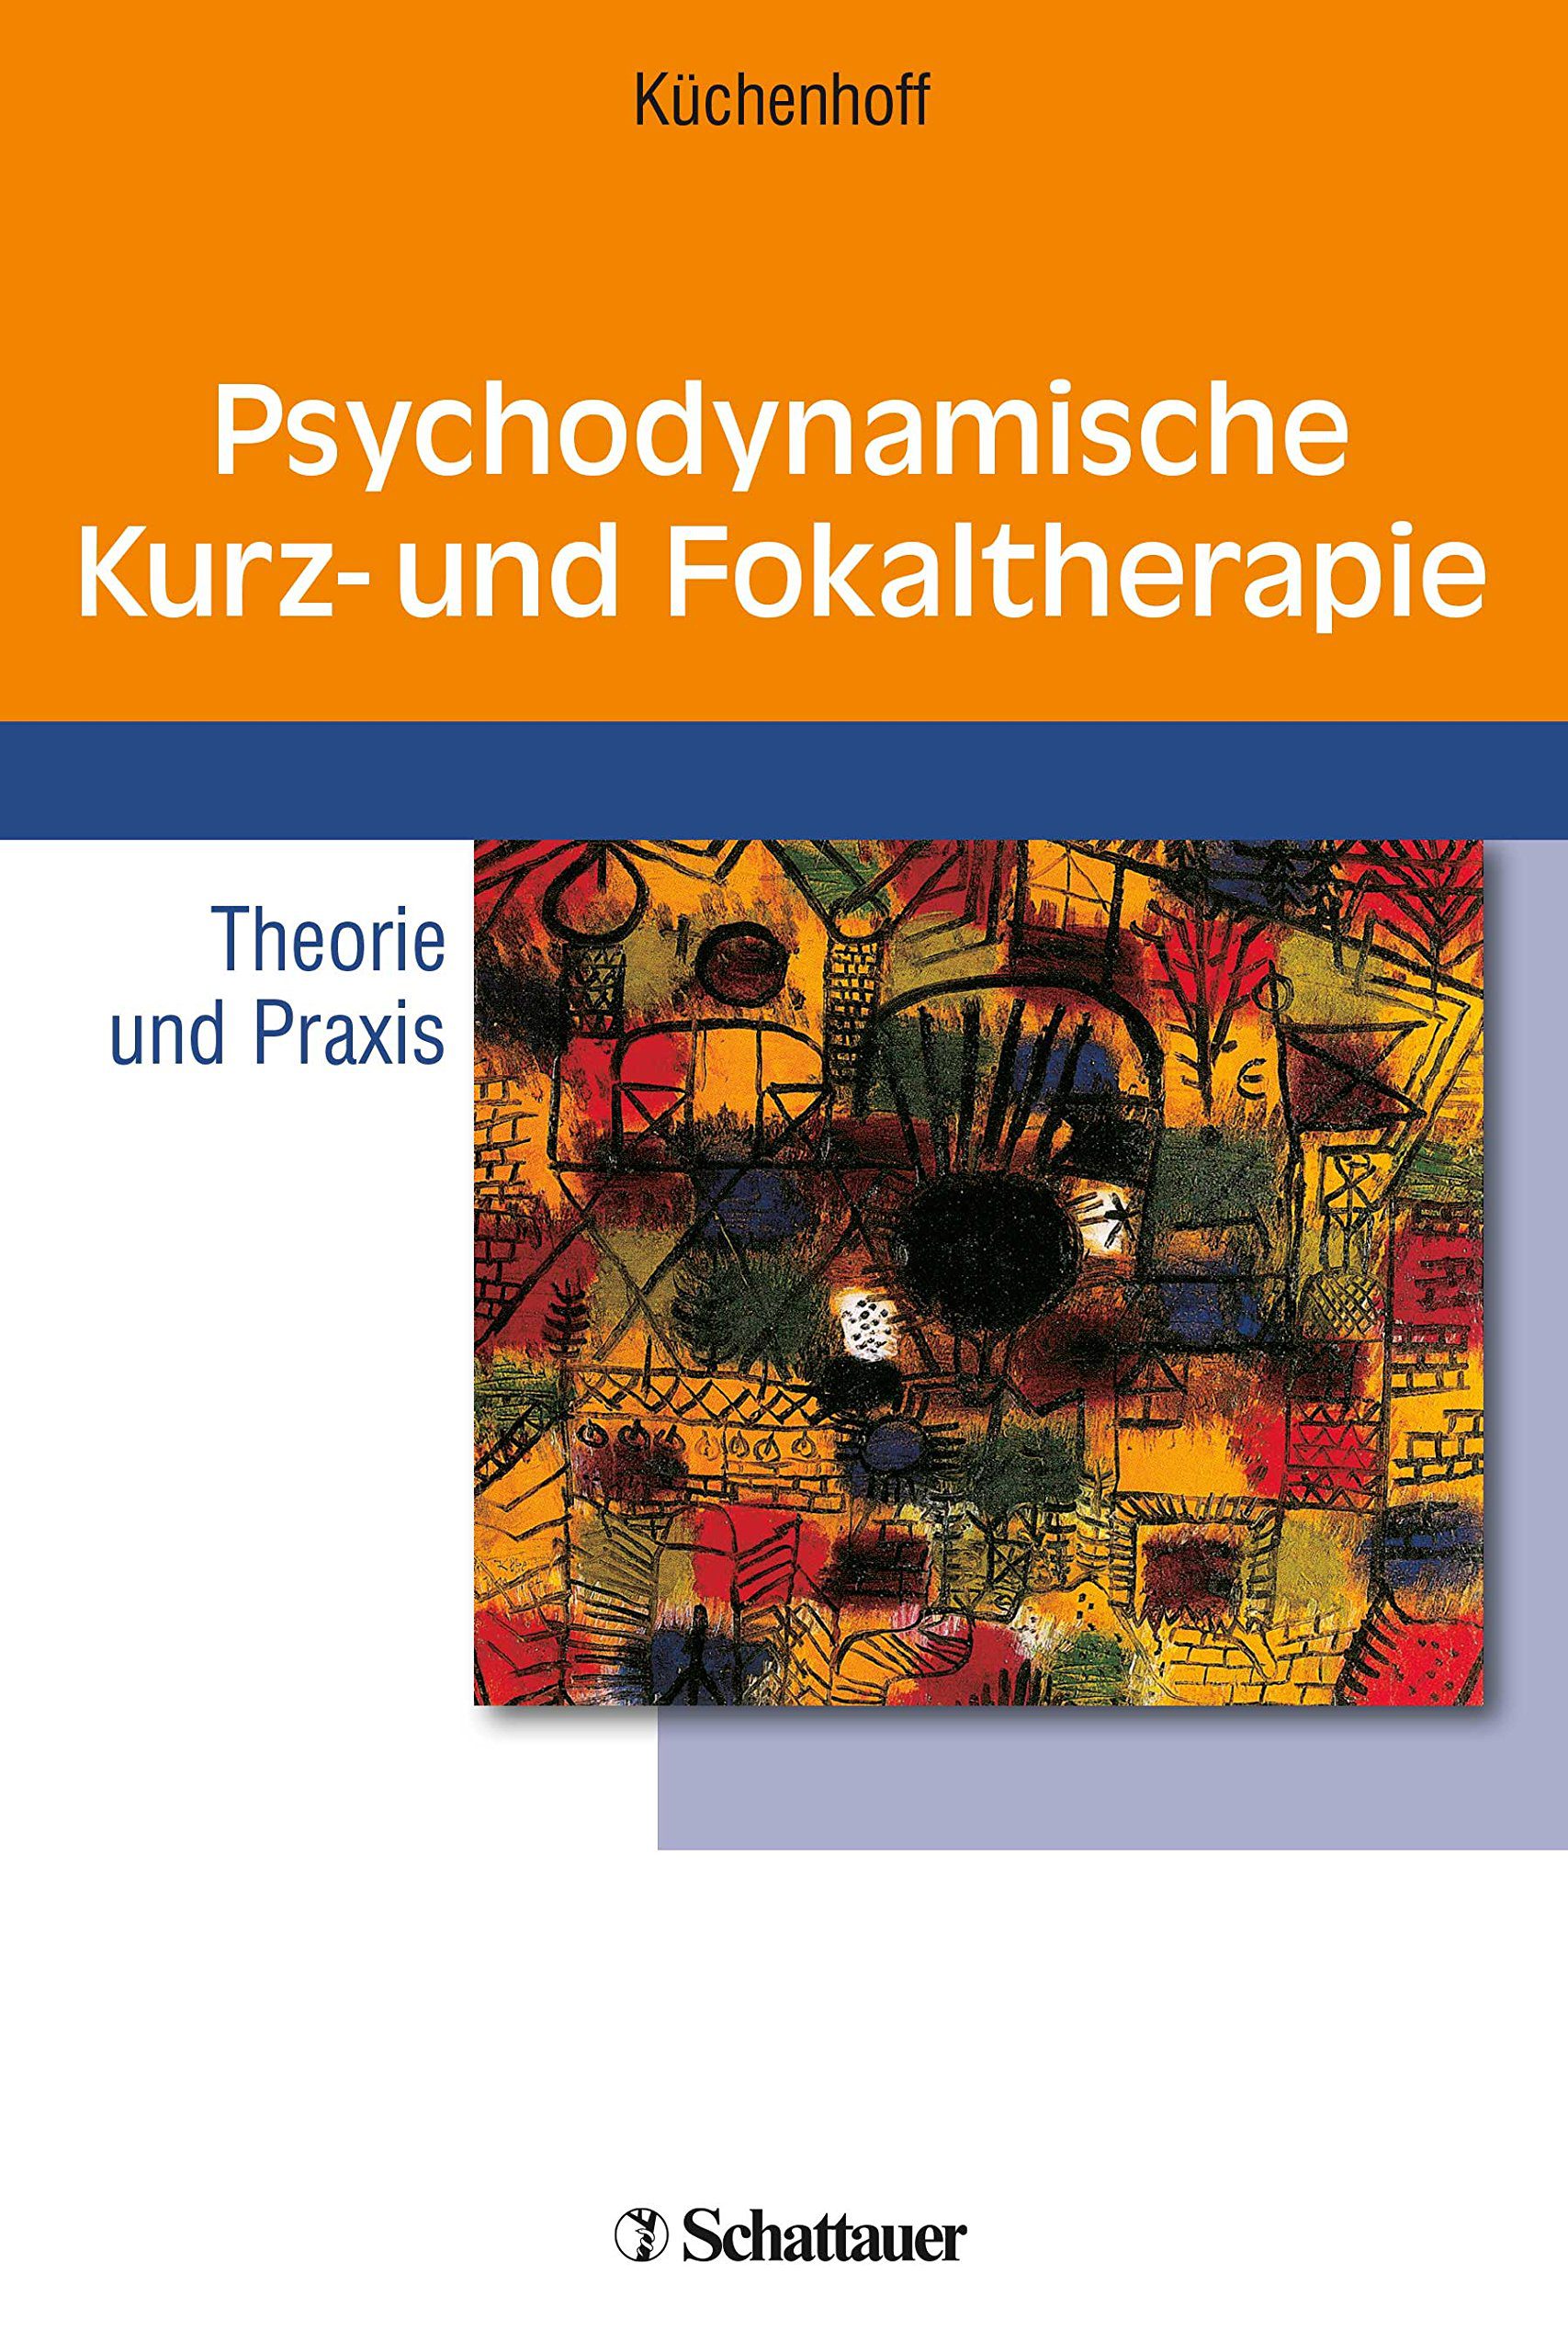 Buch: Psychodynamische Kurztherapie und Fokaltherapie (Amazon)